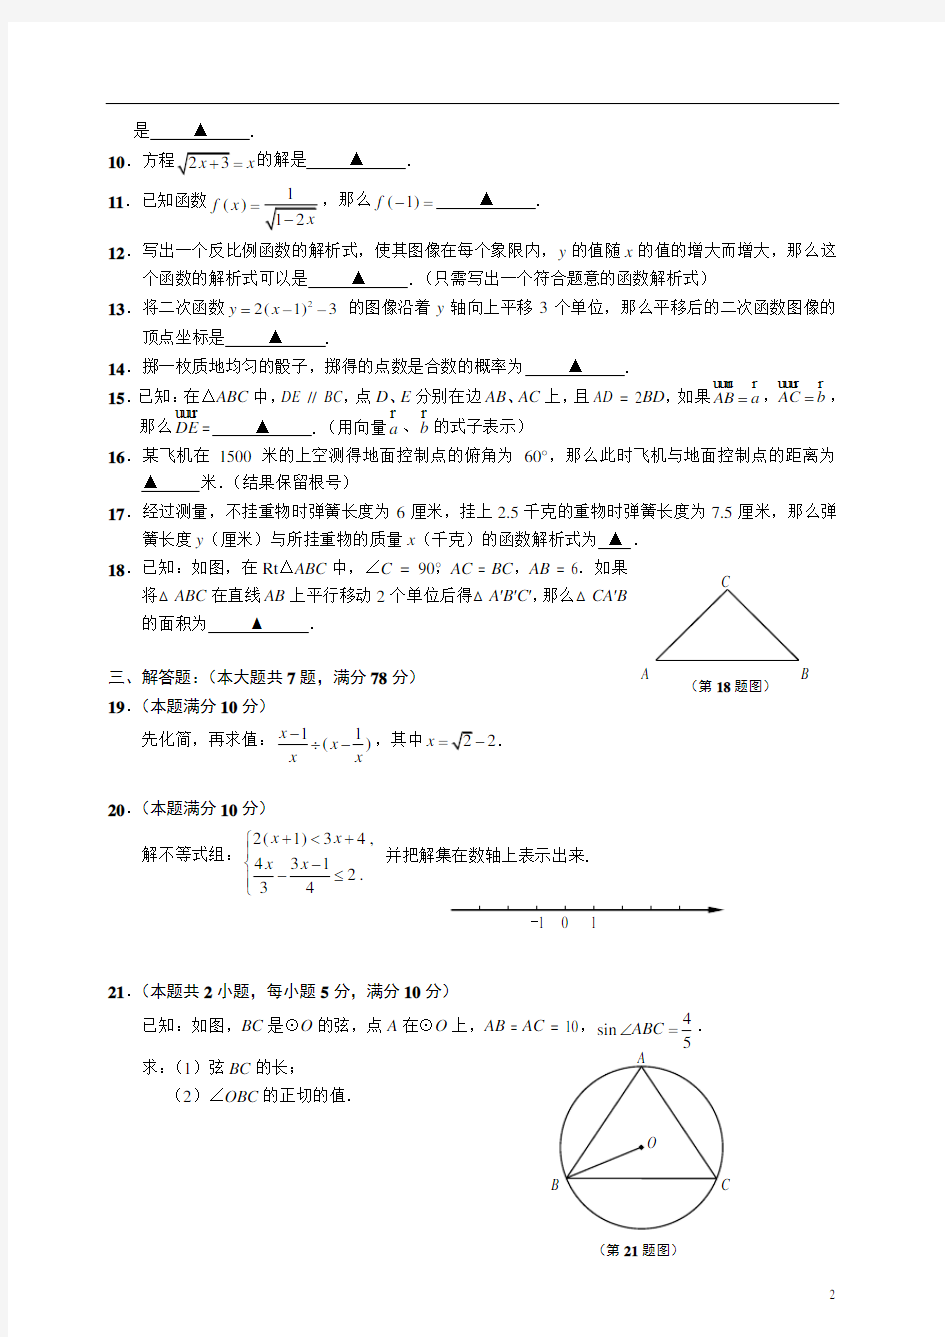 2011年中考上海闵行区数学二模试卷(附答案)